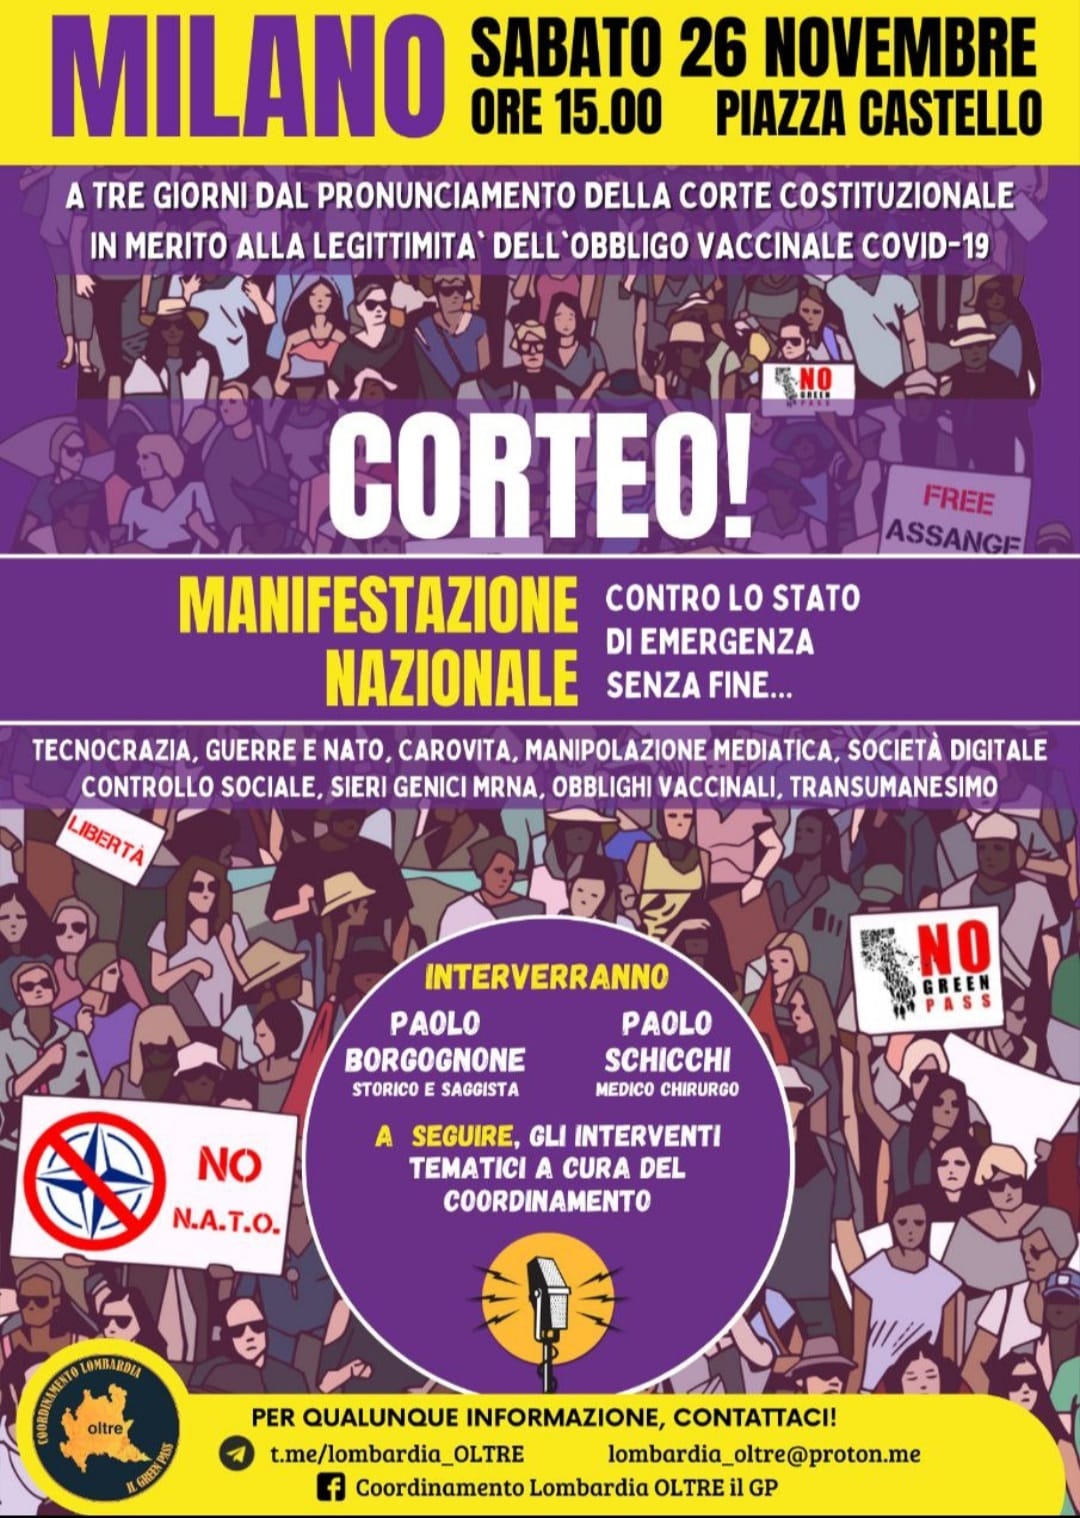 Contro lo Stato di emergenza senza fine! MANIFESTAZIONE A Milano